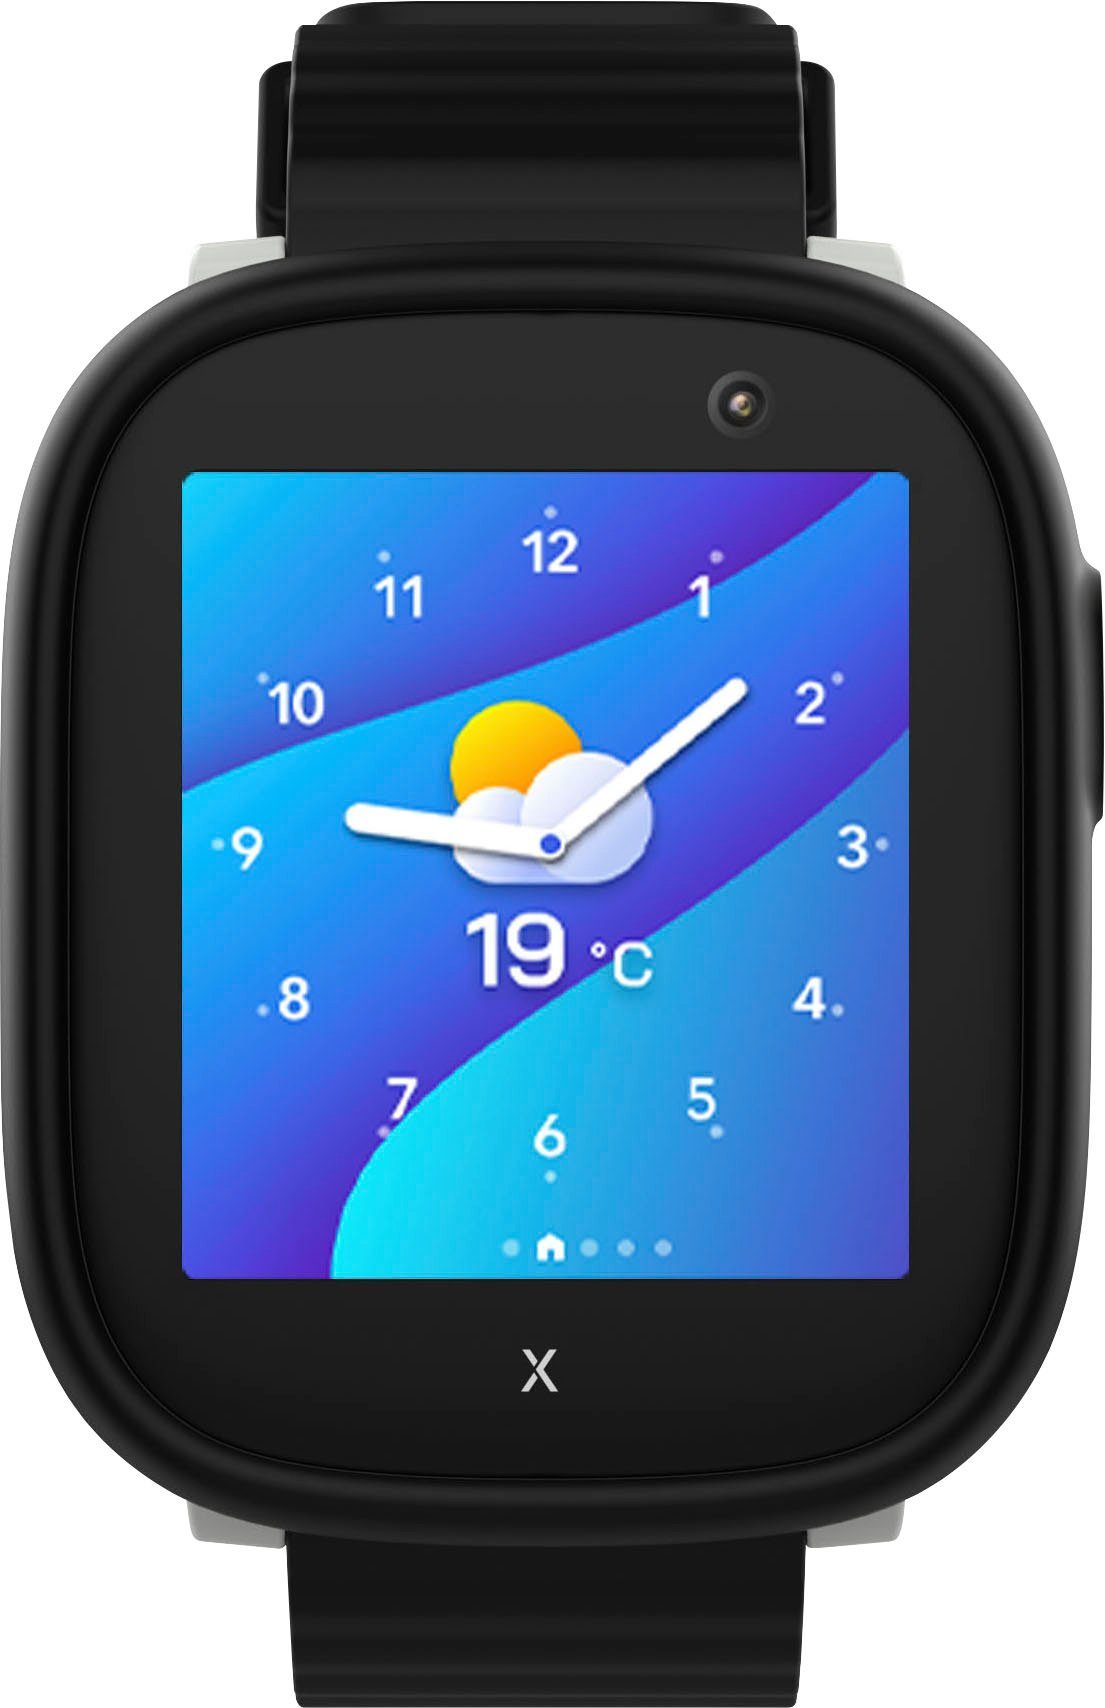 Kinder- (3,86 X6Play Android Zoll, Xplora Smartwatch cm/1,52 schwarz/schwarz Wear)